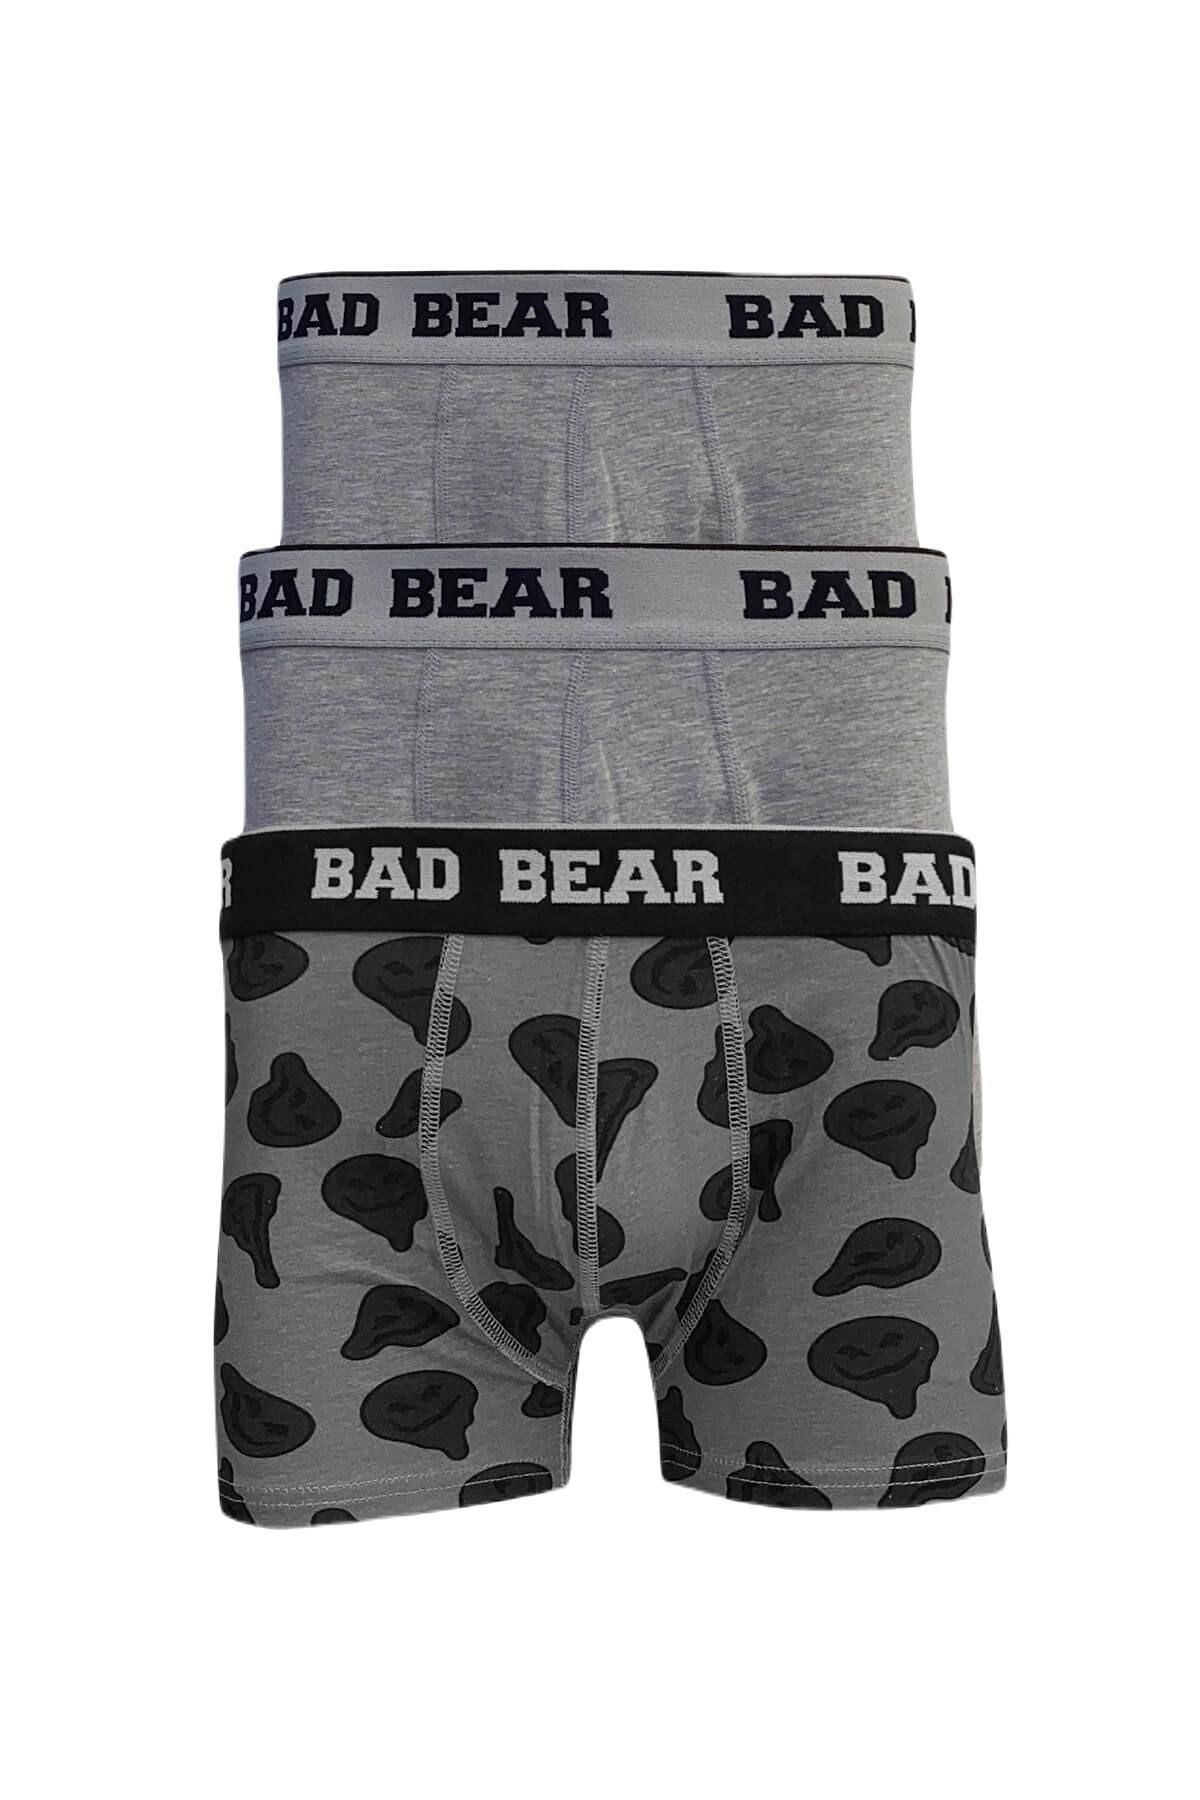 Bad Bear 21.01.03.016-c19 Melt 3-pack Erkek Boxer